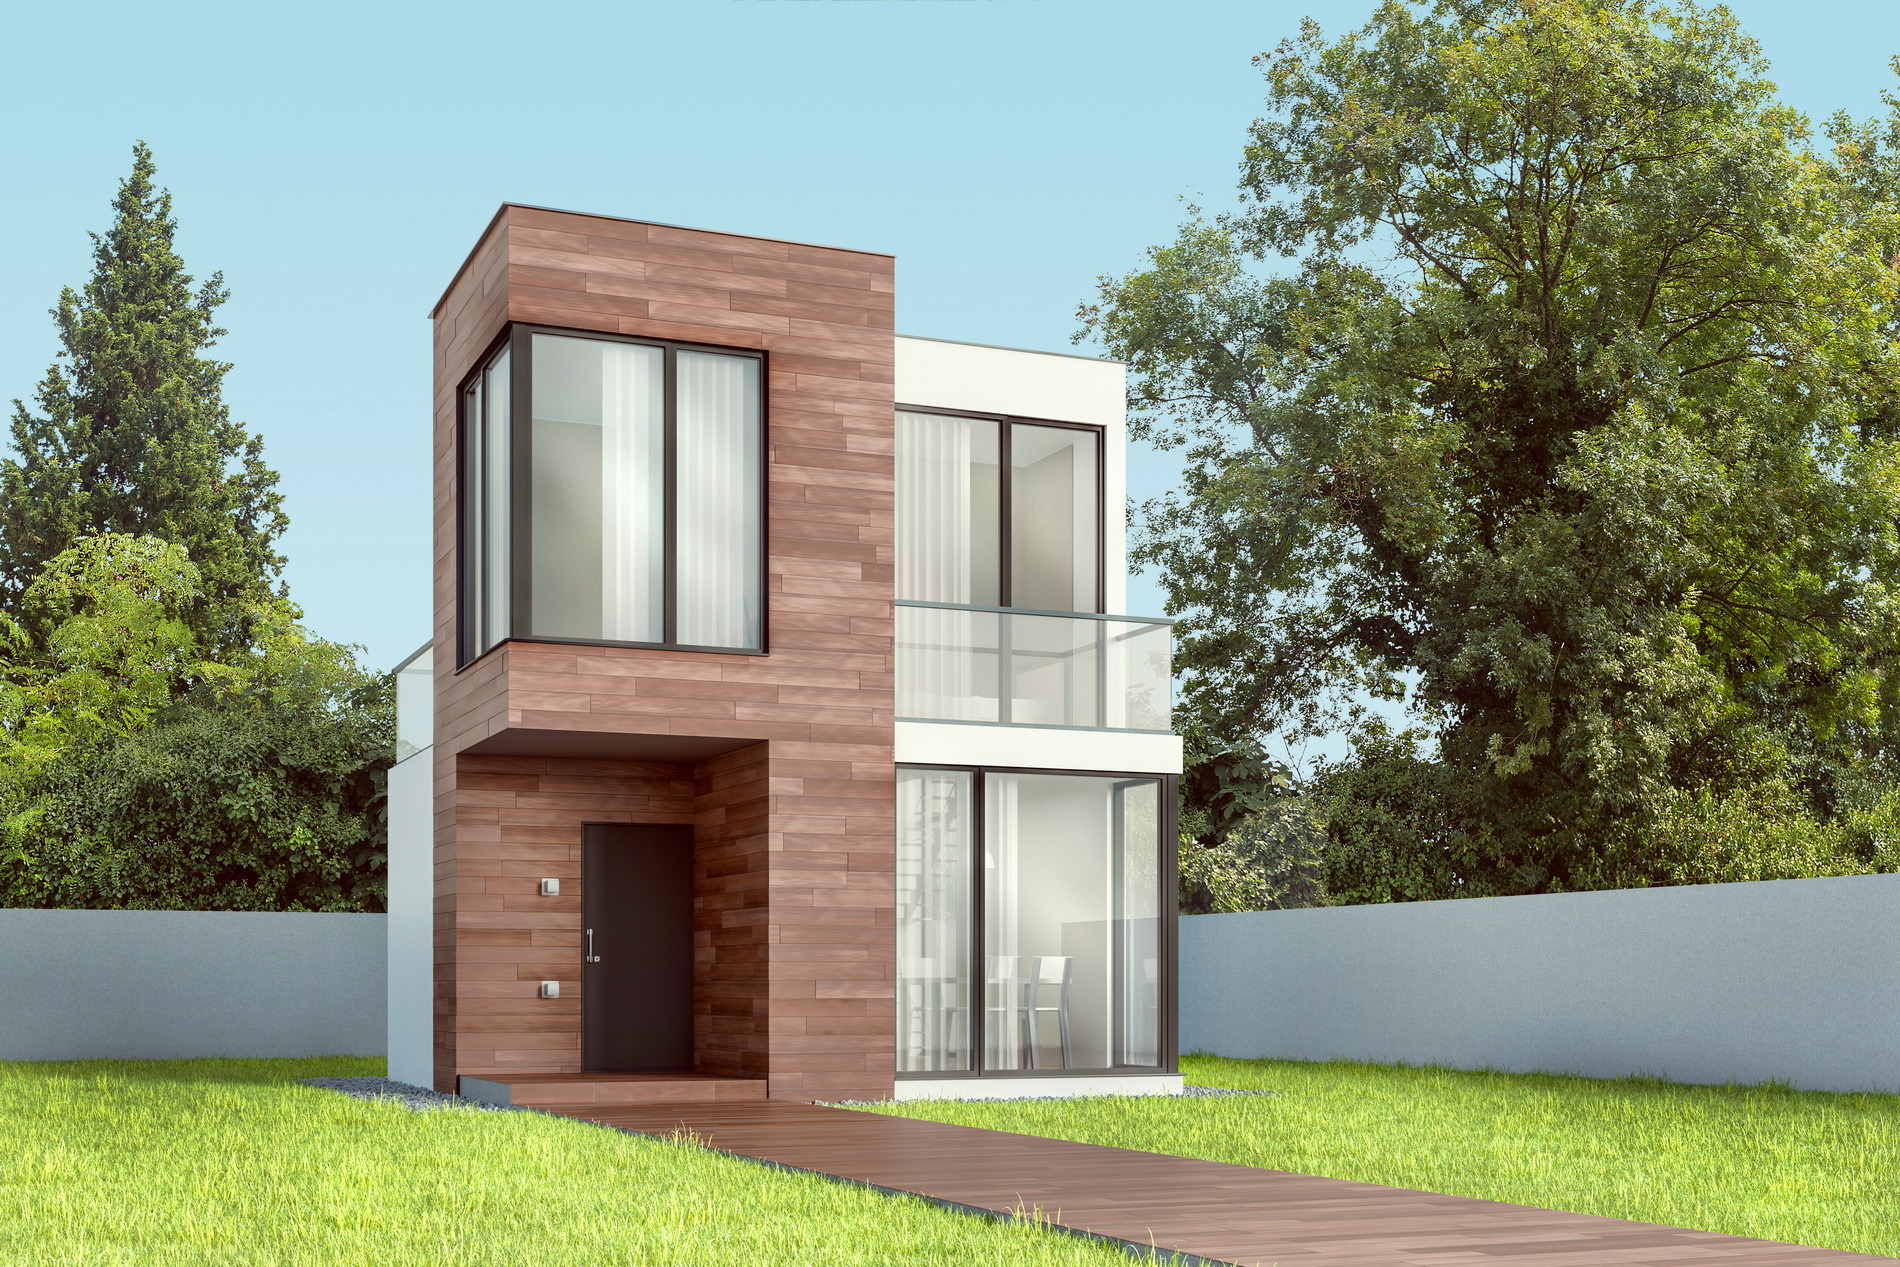 Model rumah sederhana tapi indah lantai 2 elegan fungsi ruangannya lebih optimal.